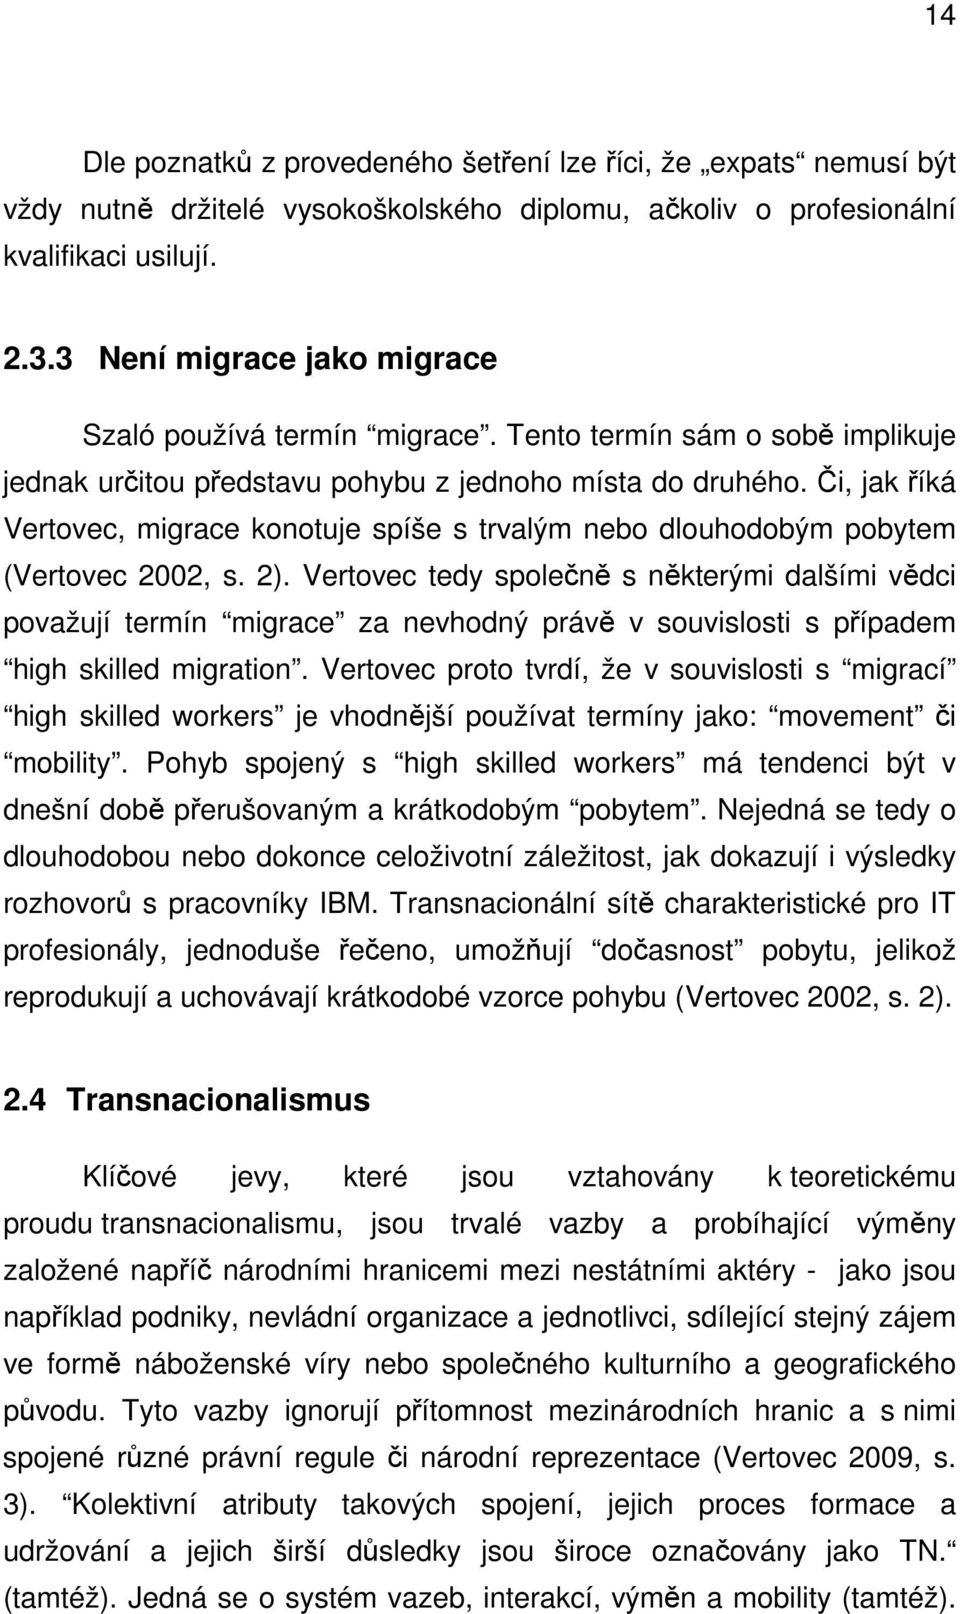 Či, jak říká Vertovec, migrace konotuje spíše s trvalým nebo dlouhodobým pobytem (Vertovec 2002, s. 2).